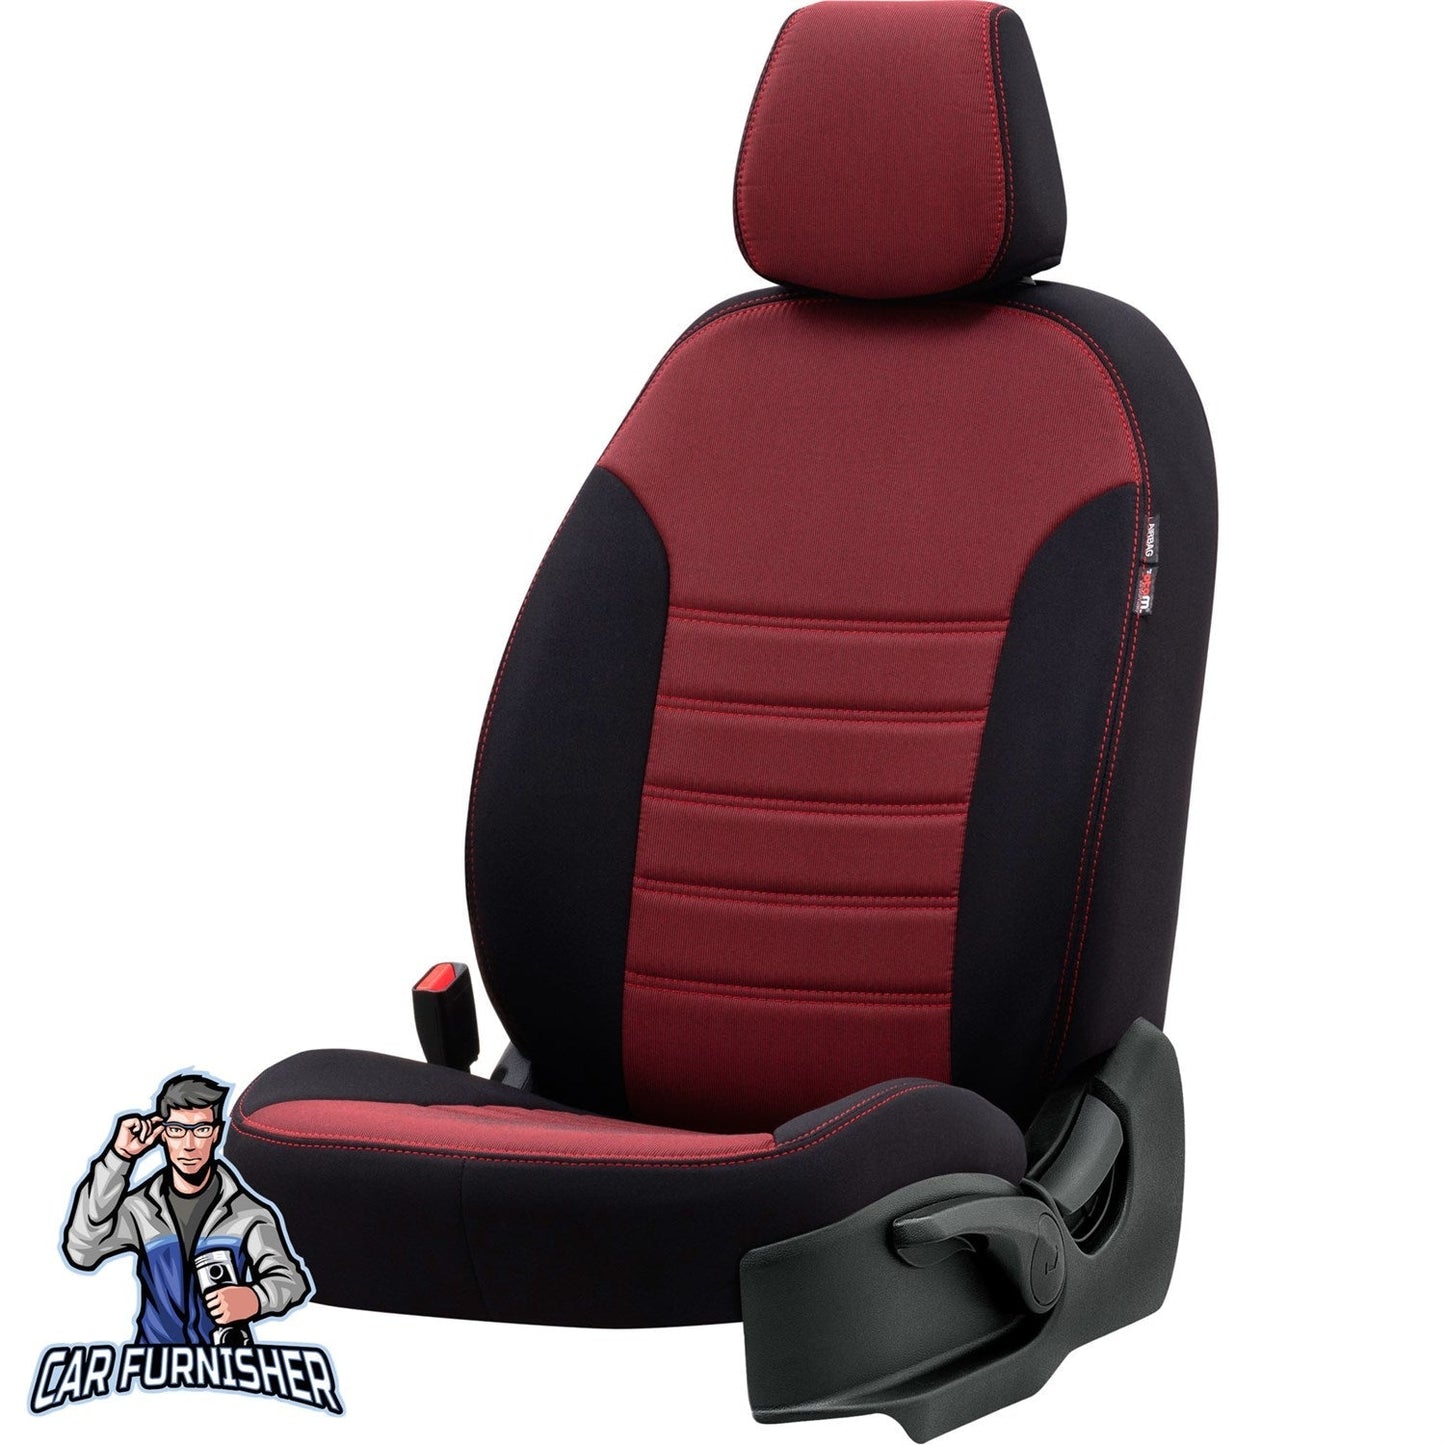 Isuzu N-Wide Seat Covers Original Jacquard Design Red Jacquard Fabric